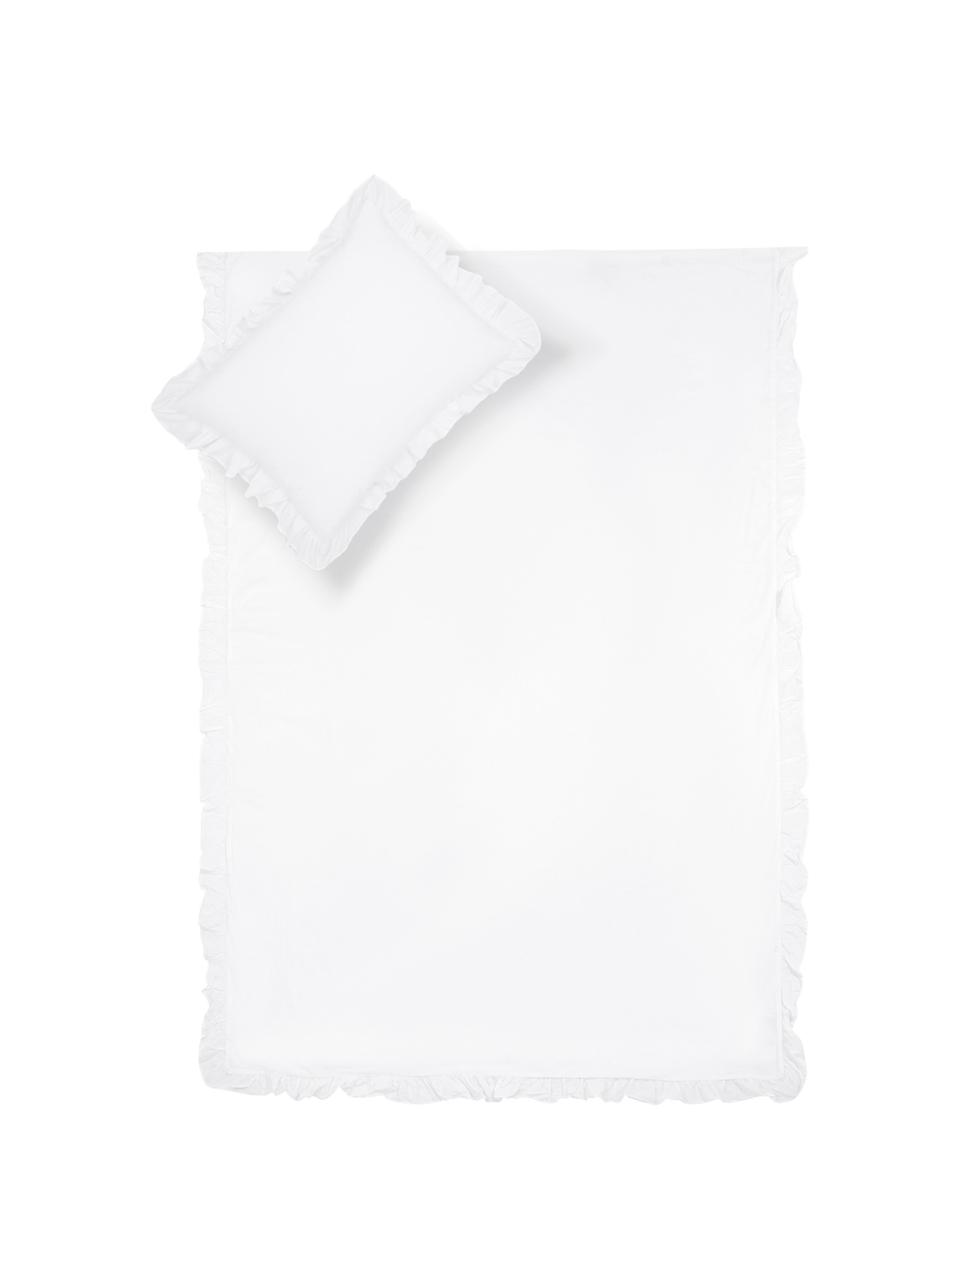 Parure copripiumino in cotone lavato con volant Florence, Tessuto: percalle Densità del filo, Bianco, 255 x 200 cm + 2 federe 50 x 80 cm